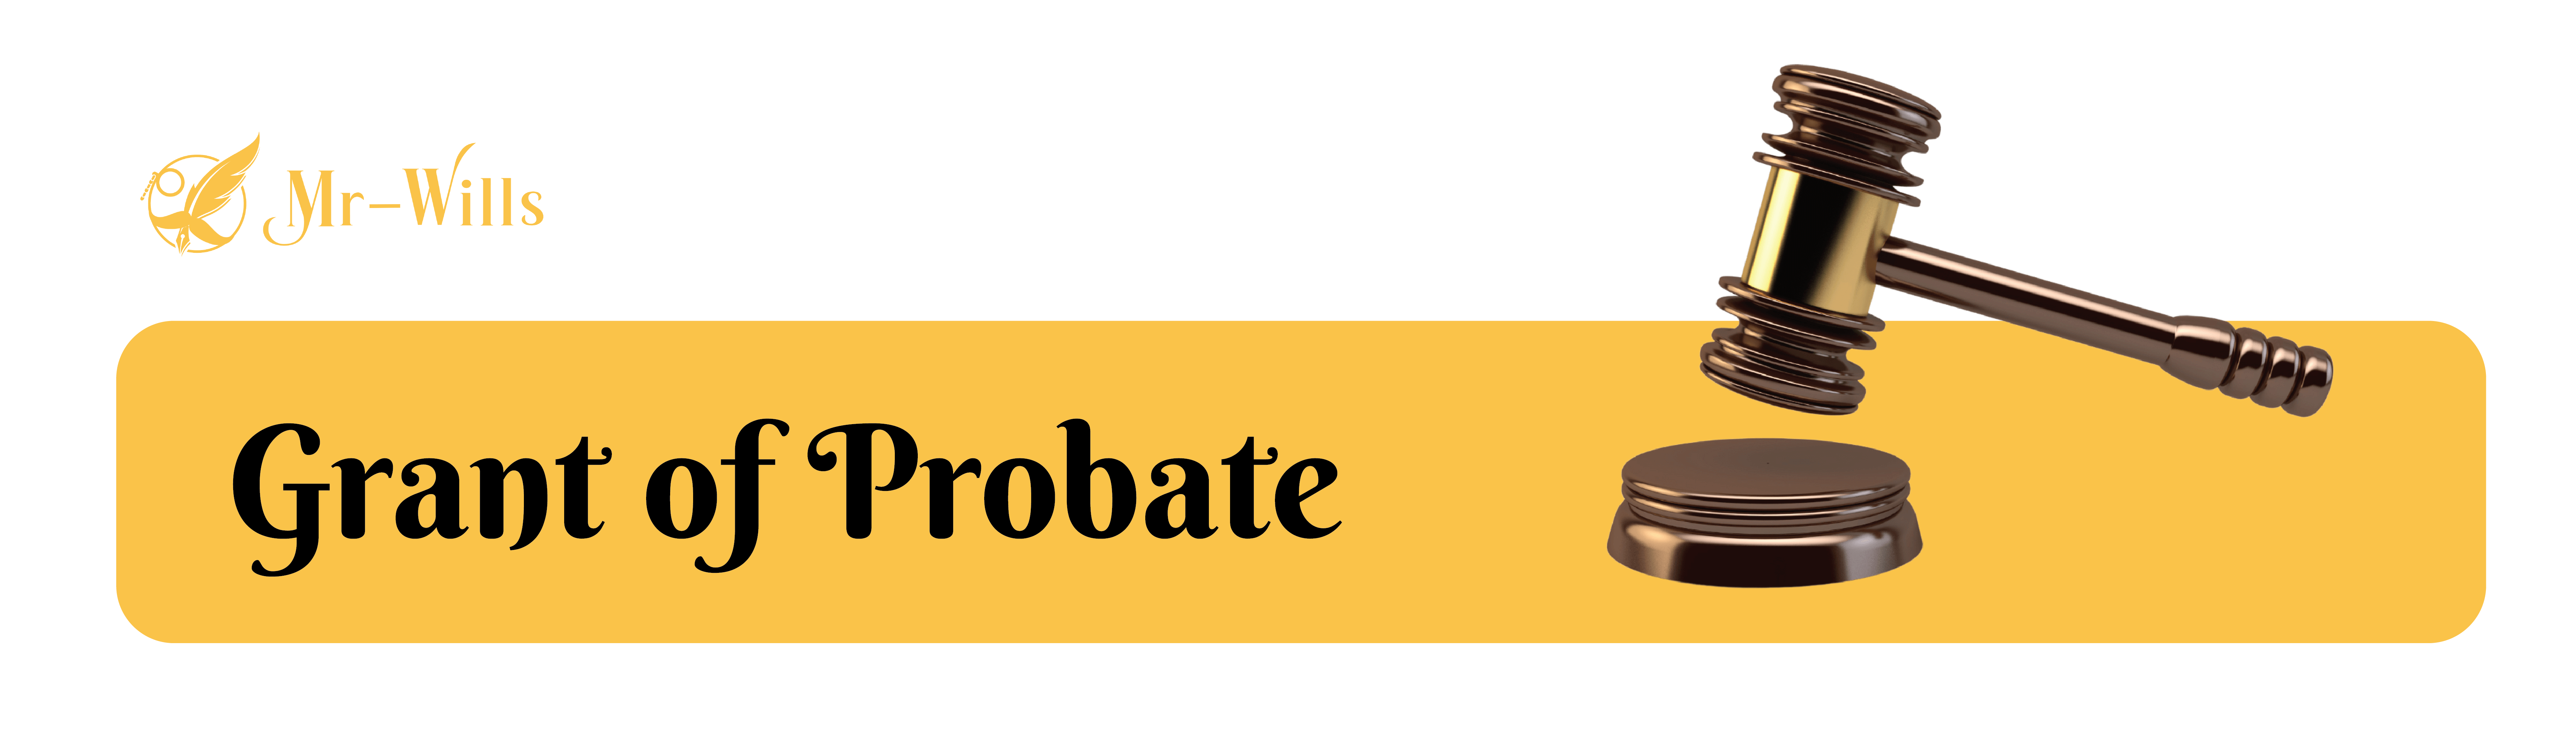 GRANT_OF_PROBATE_V3